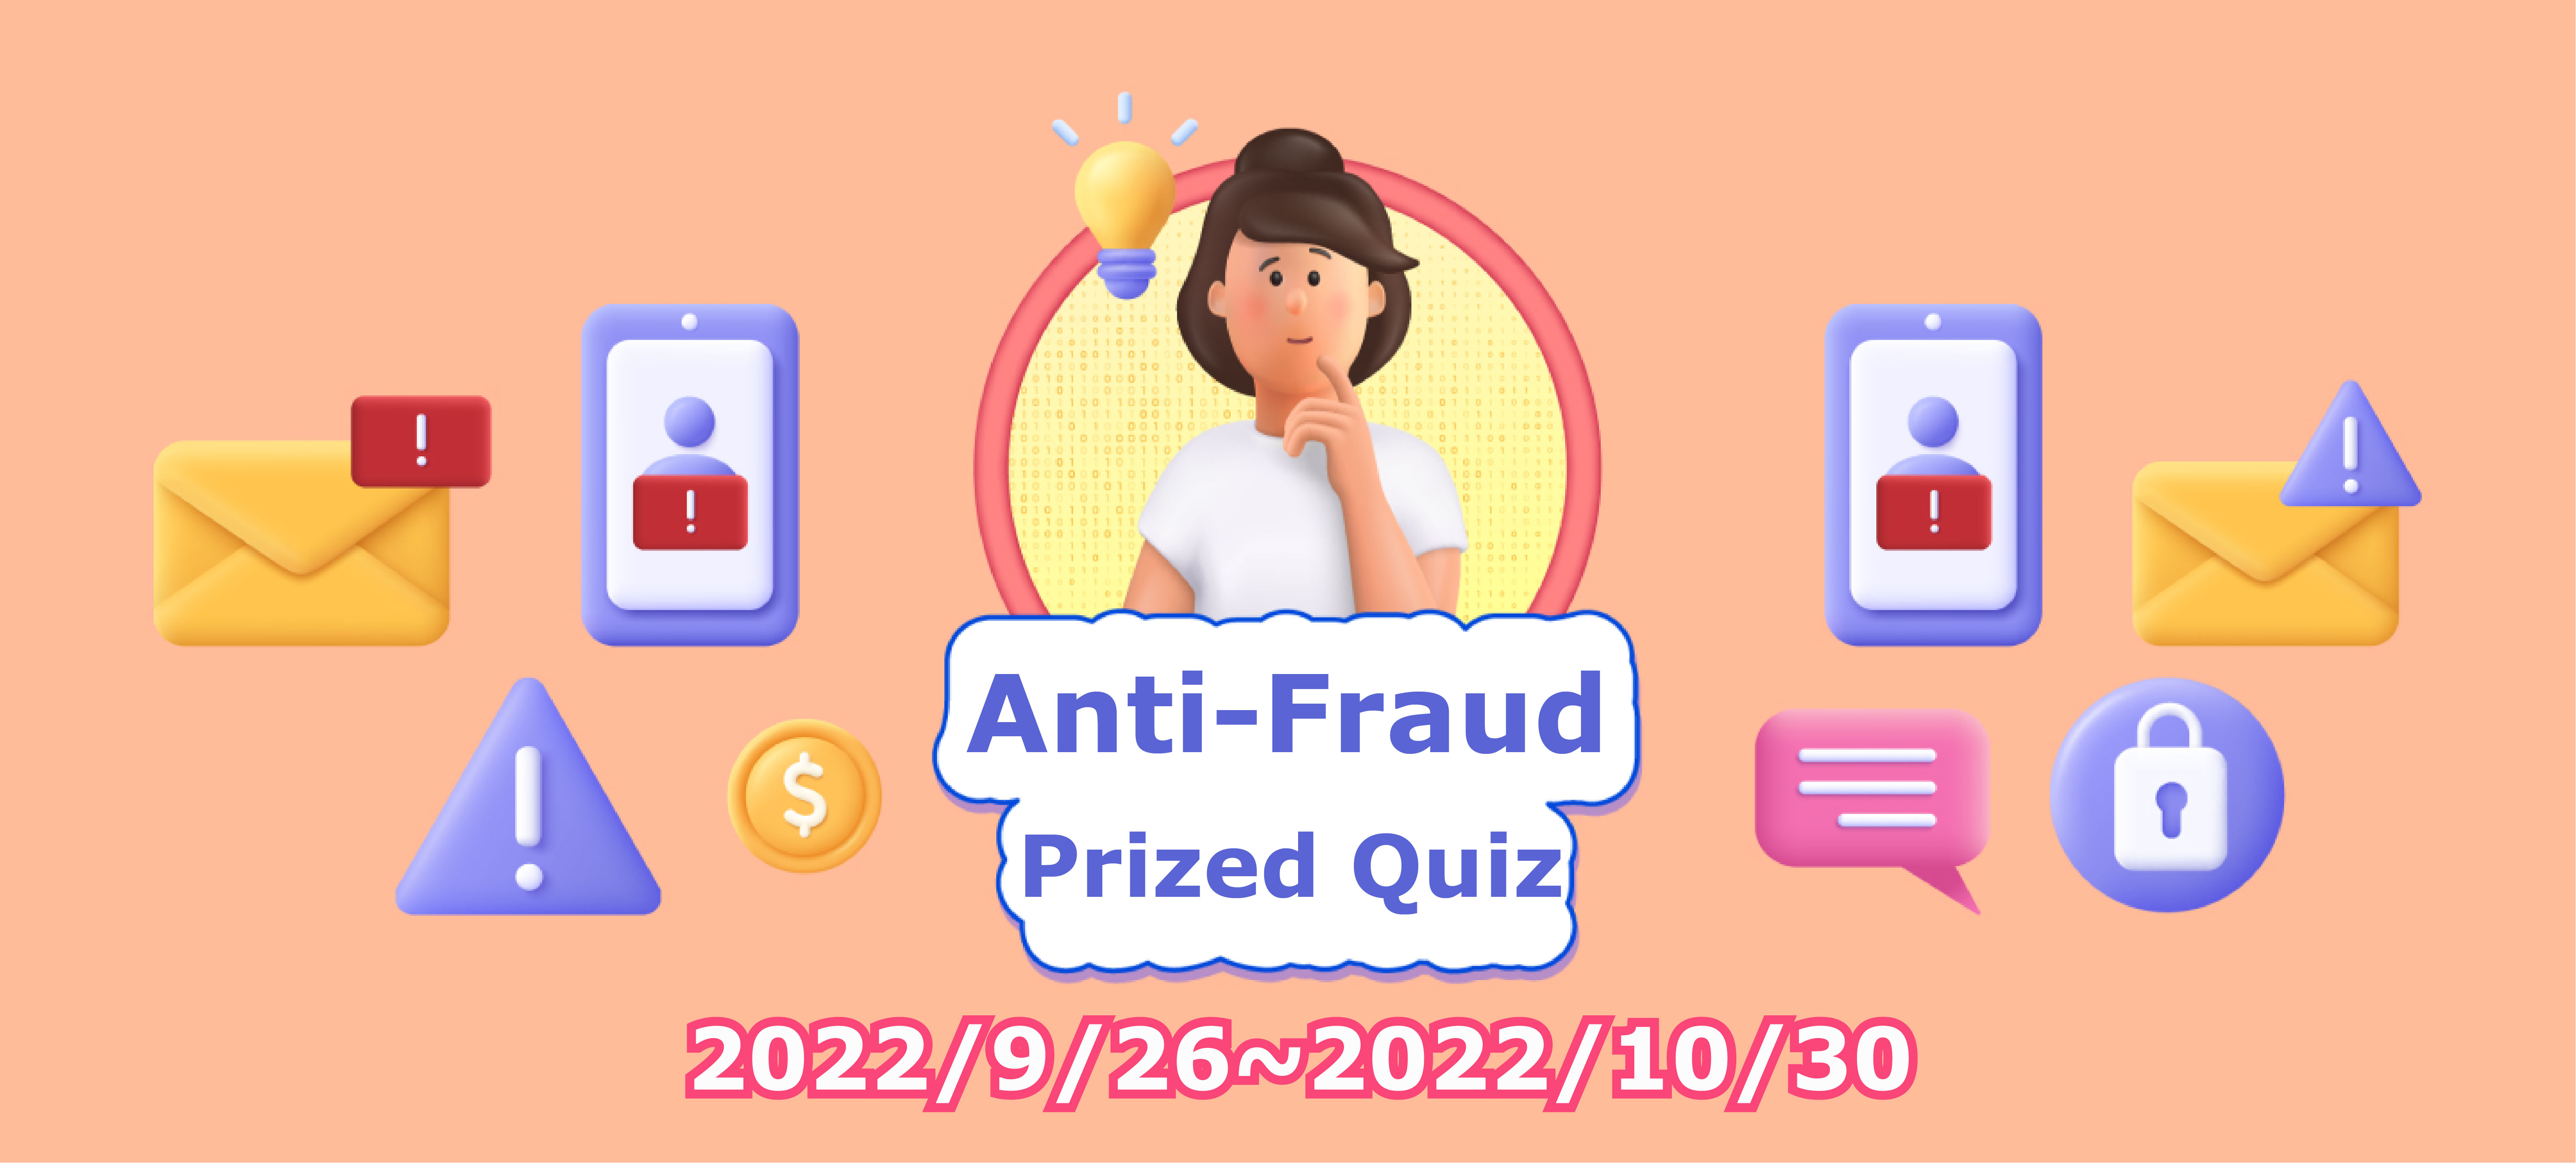 Online fraud rewards quiz game